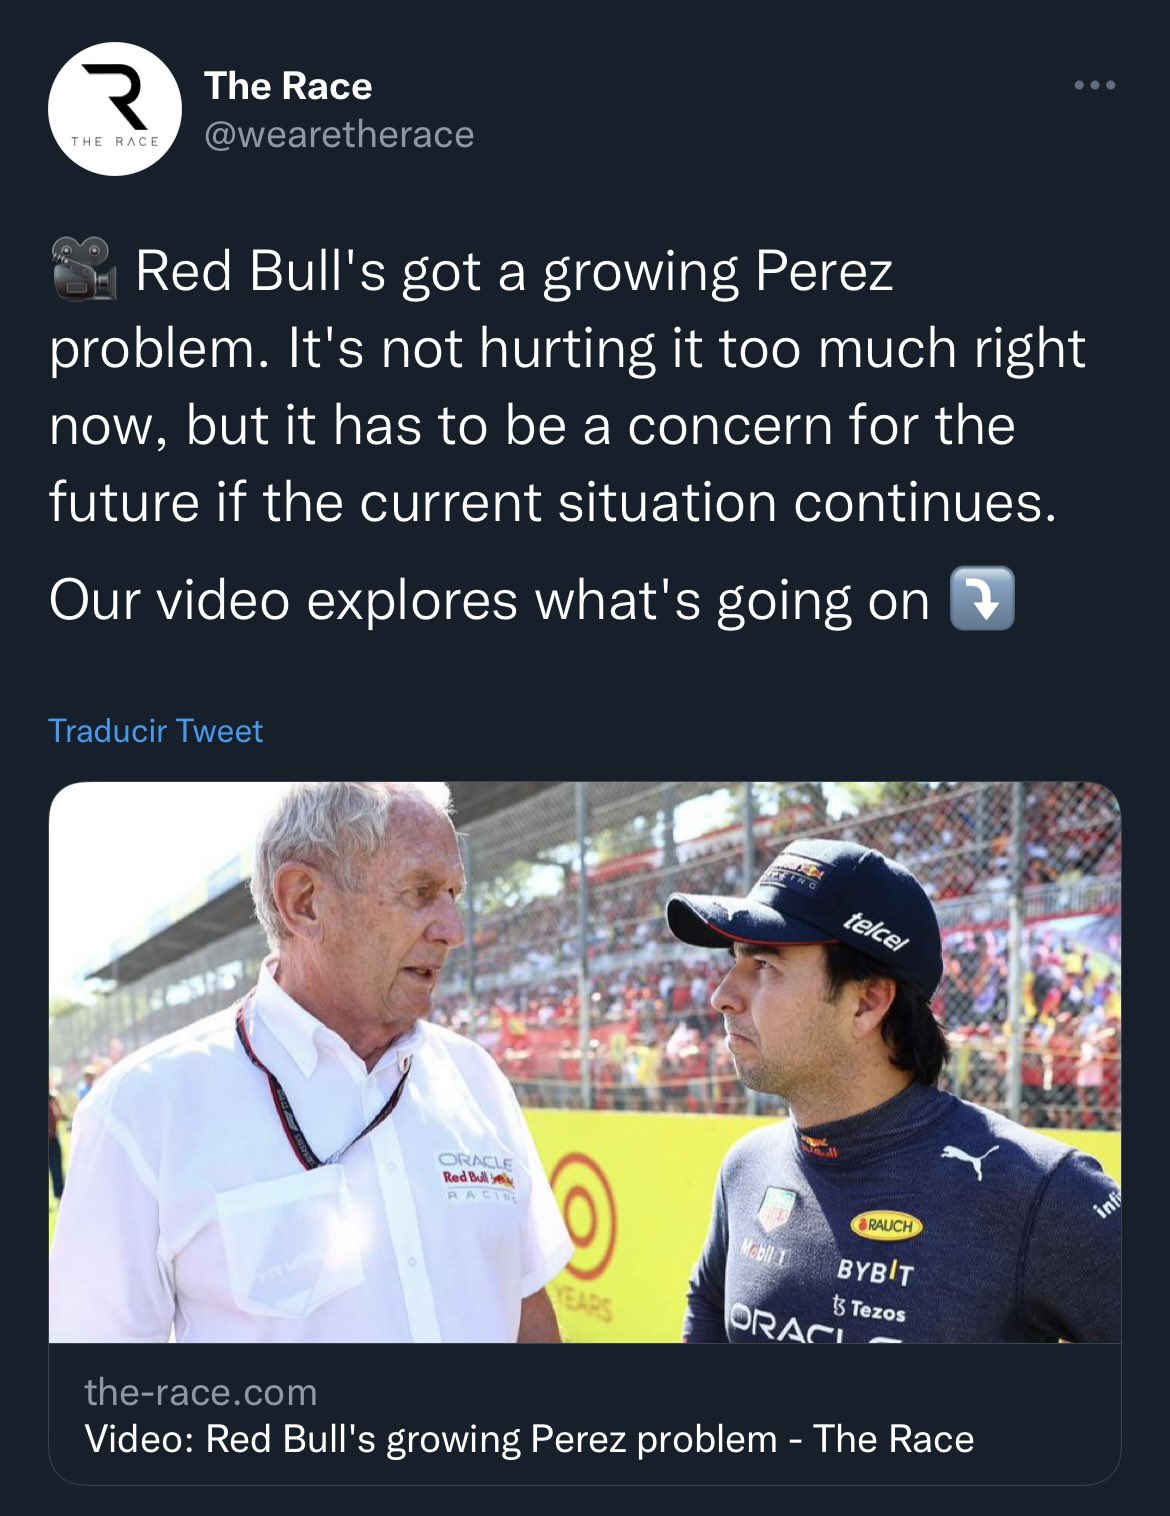 "Red Bull tiene un problema creciente con Pérez. No le duele demasiado ahora, pero tiene que ser una preocupación para el futuro si la situación actual continúa. Nuestro video explora lo que está pasando". Foto: @wearetherace